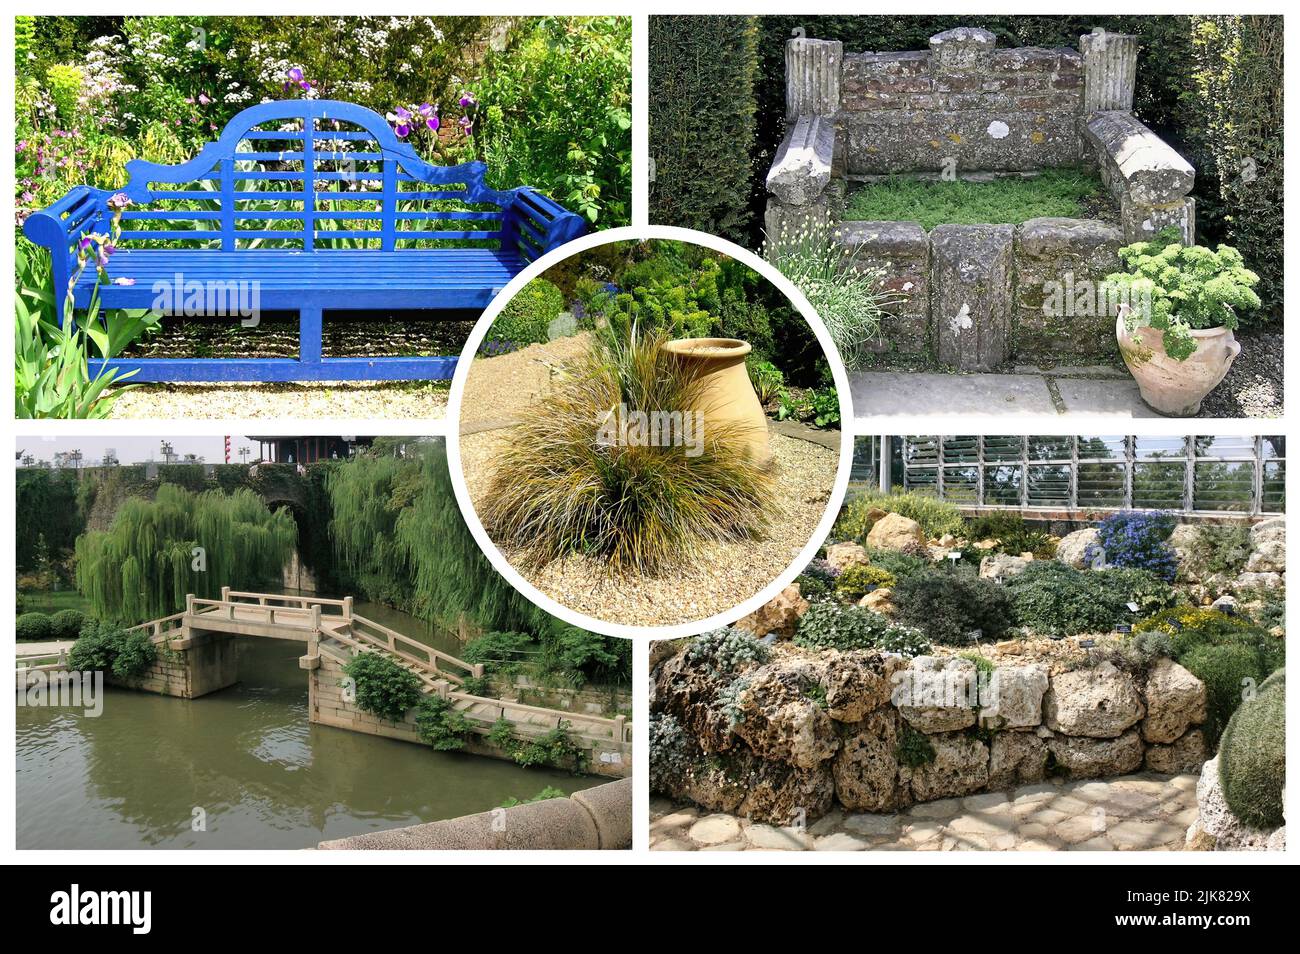 Le beau jardin Denmans avec des lits de rivière secs, des jardins en gravier, un jardin clos, un jardin d'hiver et des plantes inhabituelles. Banque D'Images